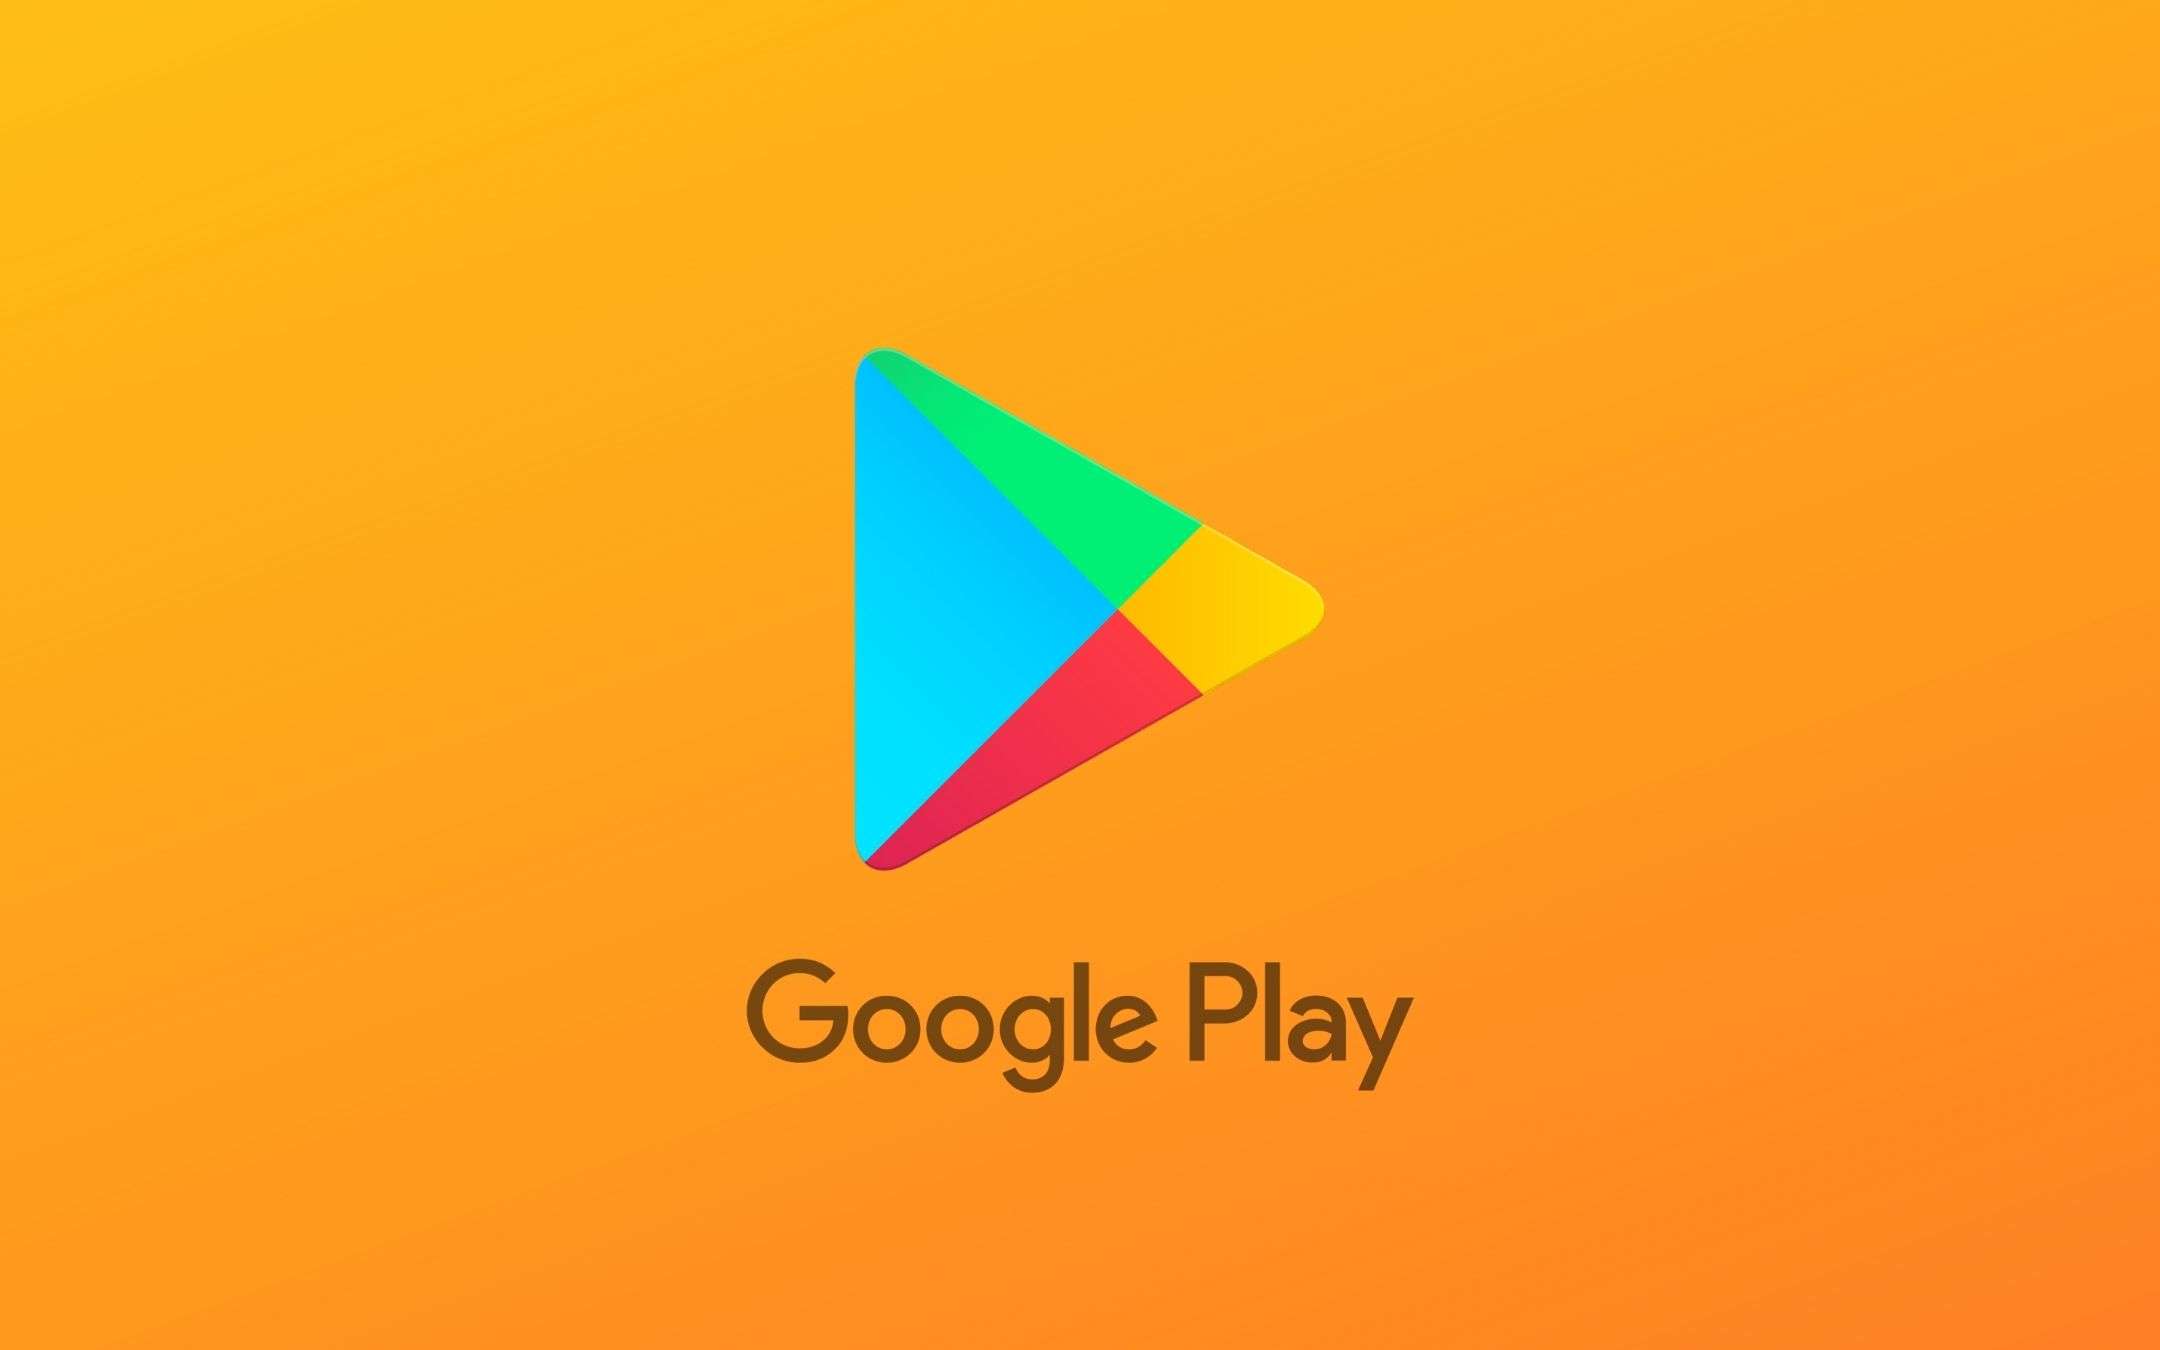 Google impazzisce: oltre 60 app e giochi disponibili in regalo per smartphone Android